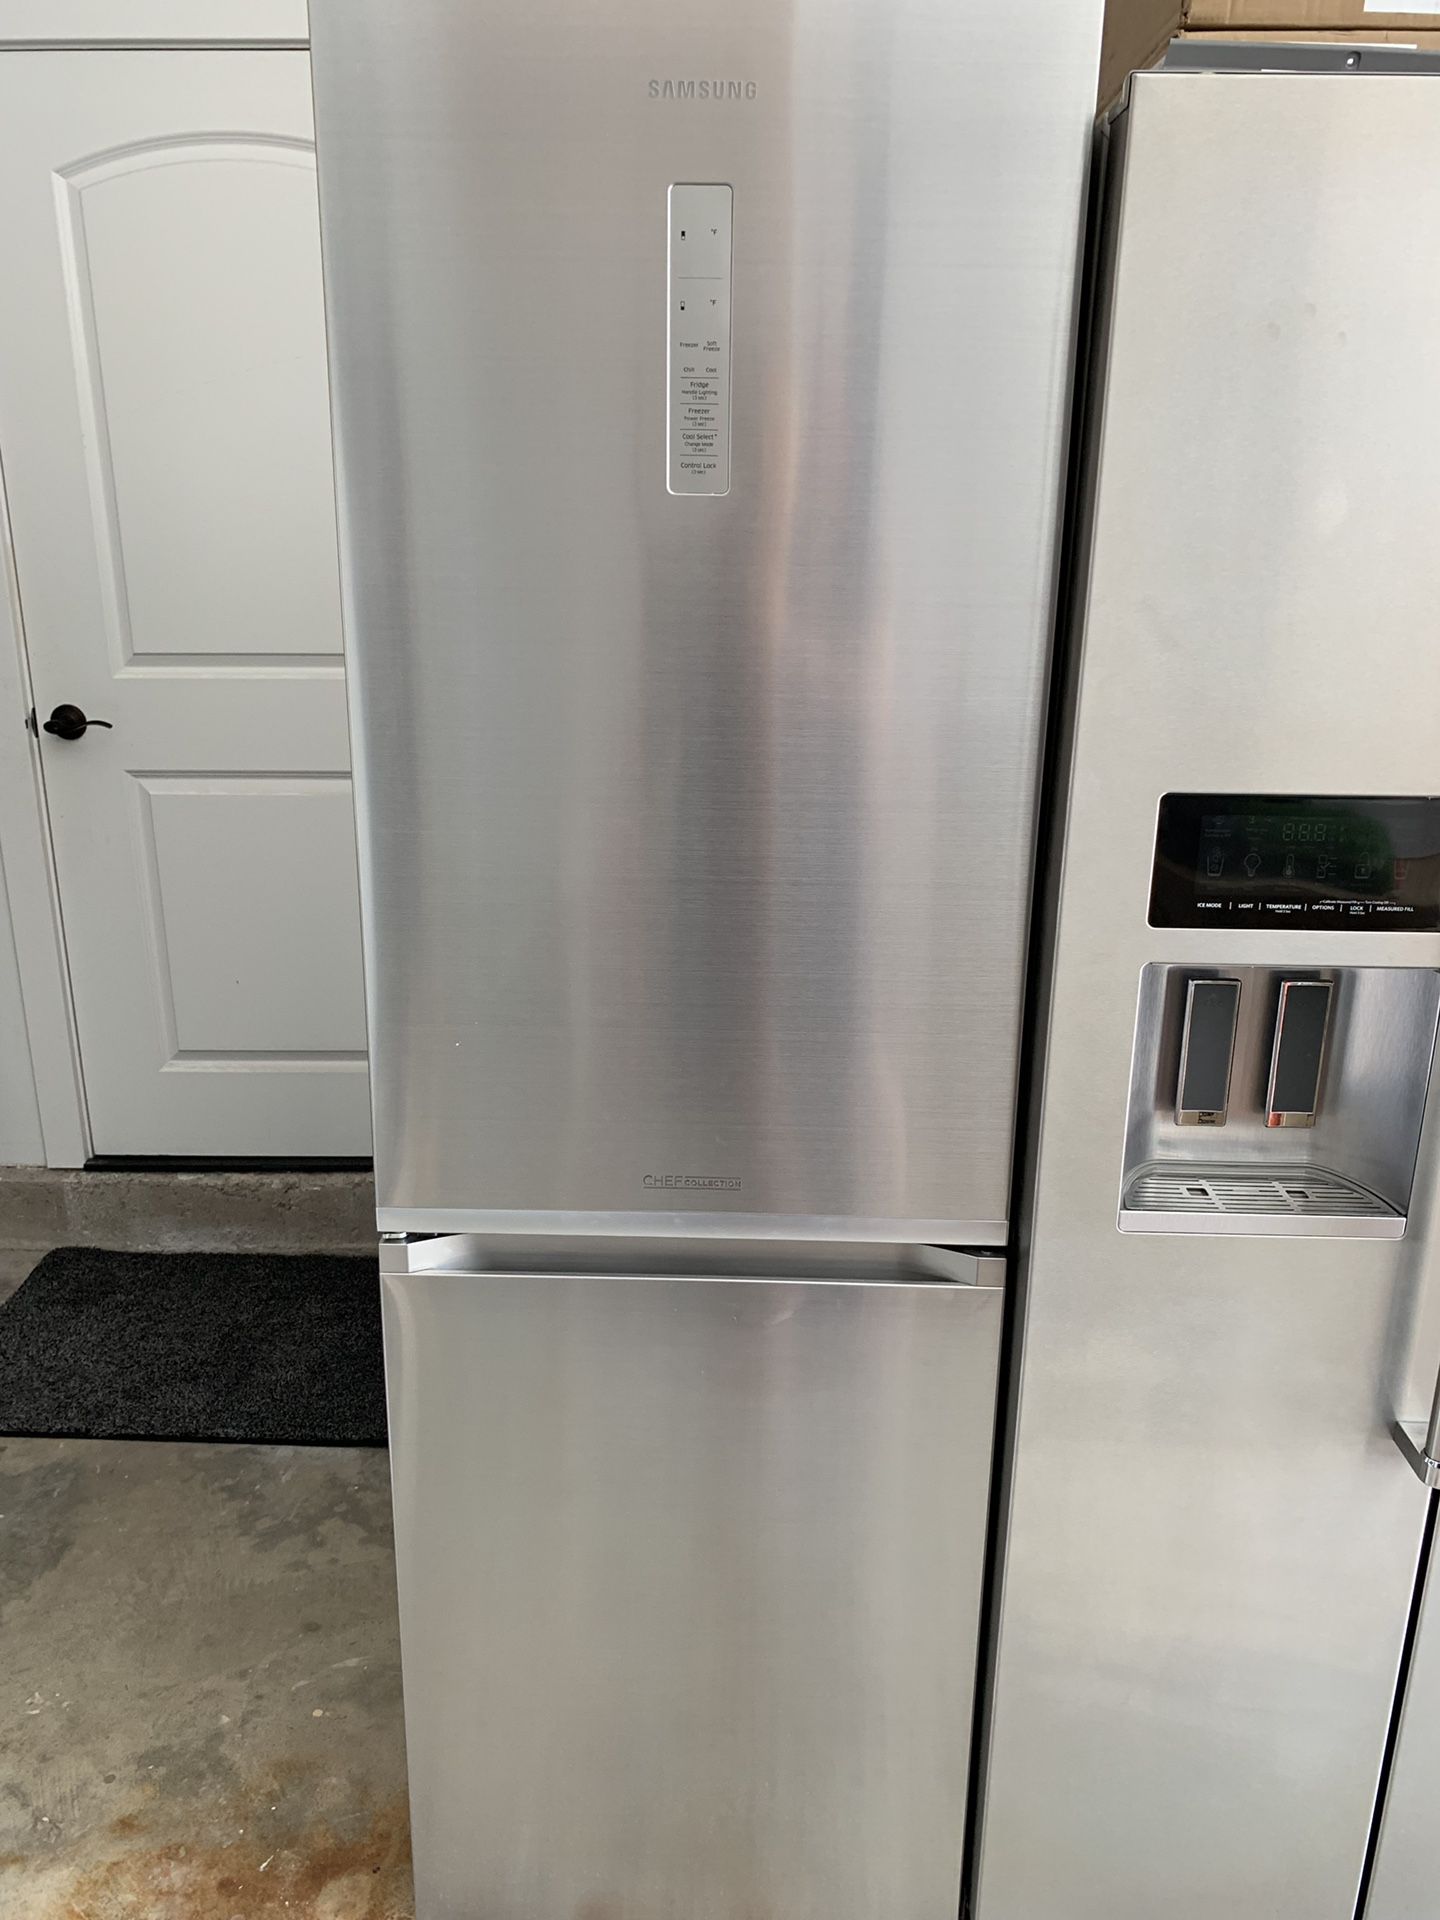 Samsung Kitchen Appliances - 24” Refrigerator